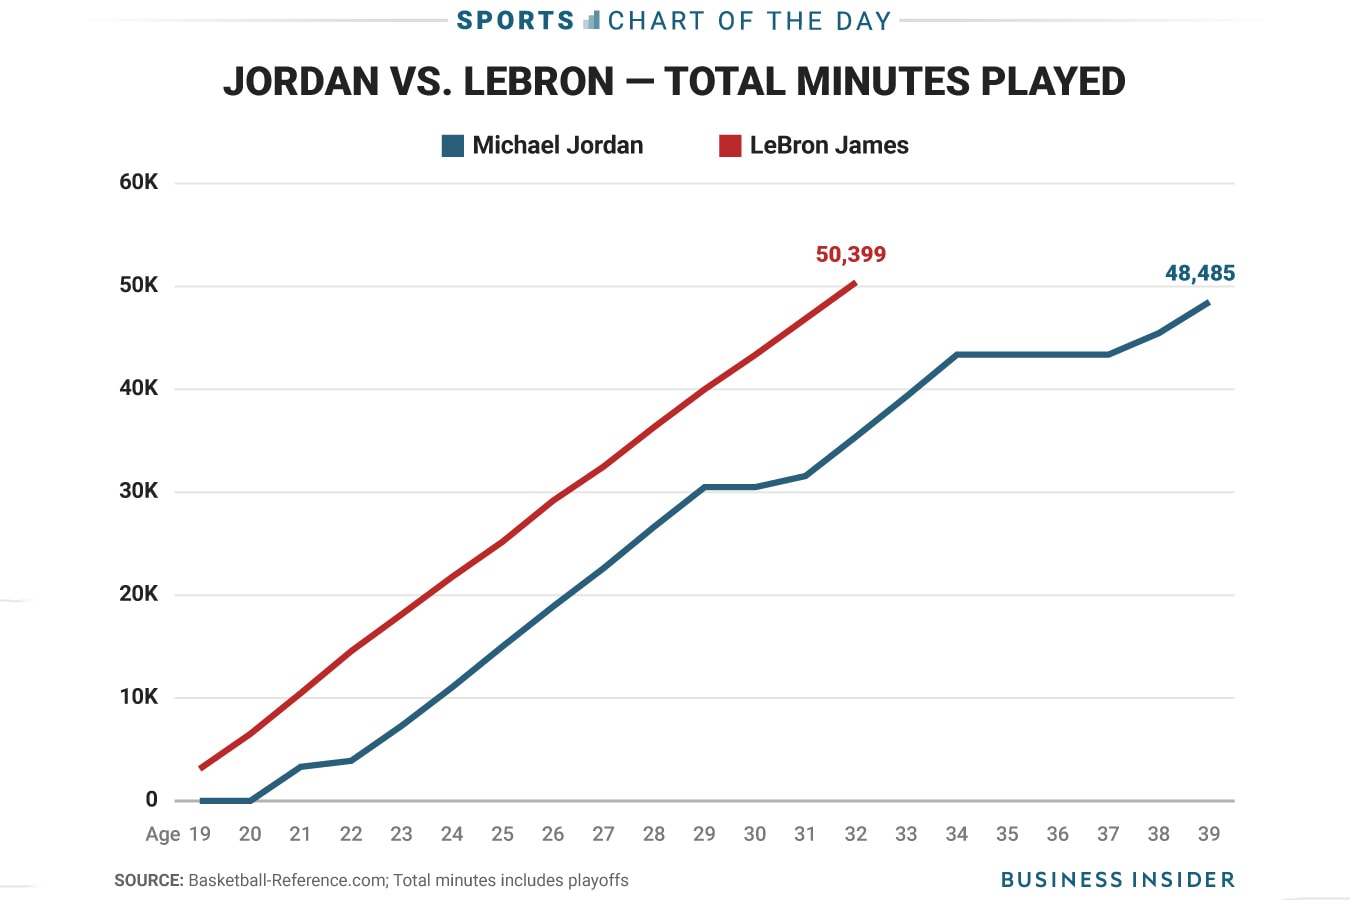 統計顯示 LeBron James 已經超越 Michael Jordan 的 NBA 出場時間